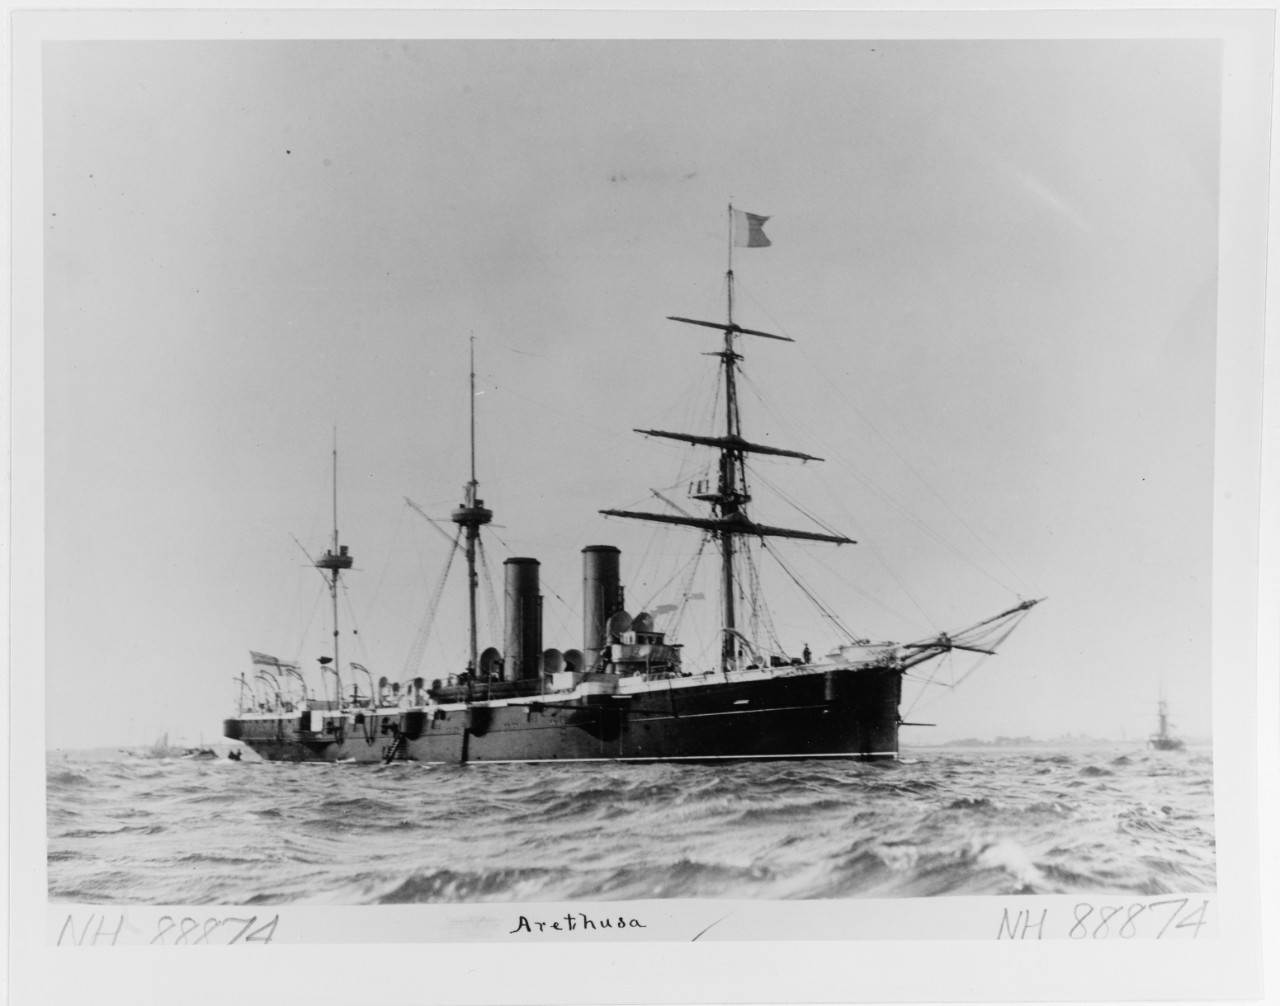 ARETHUSA (British cruiser, 1882-1905)